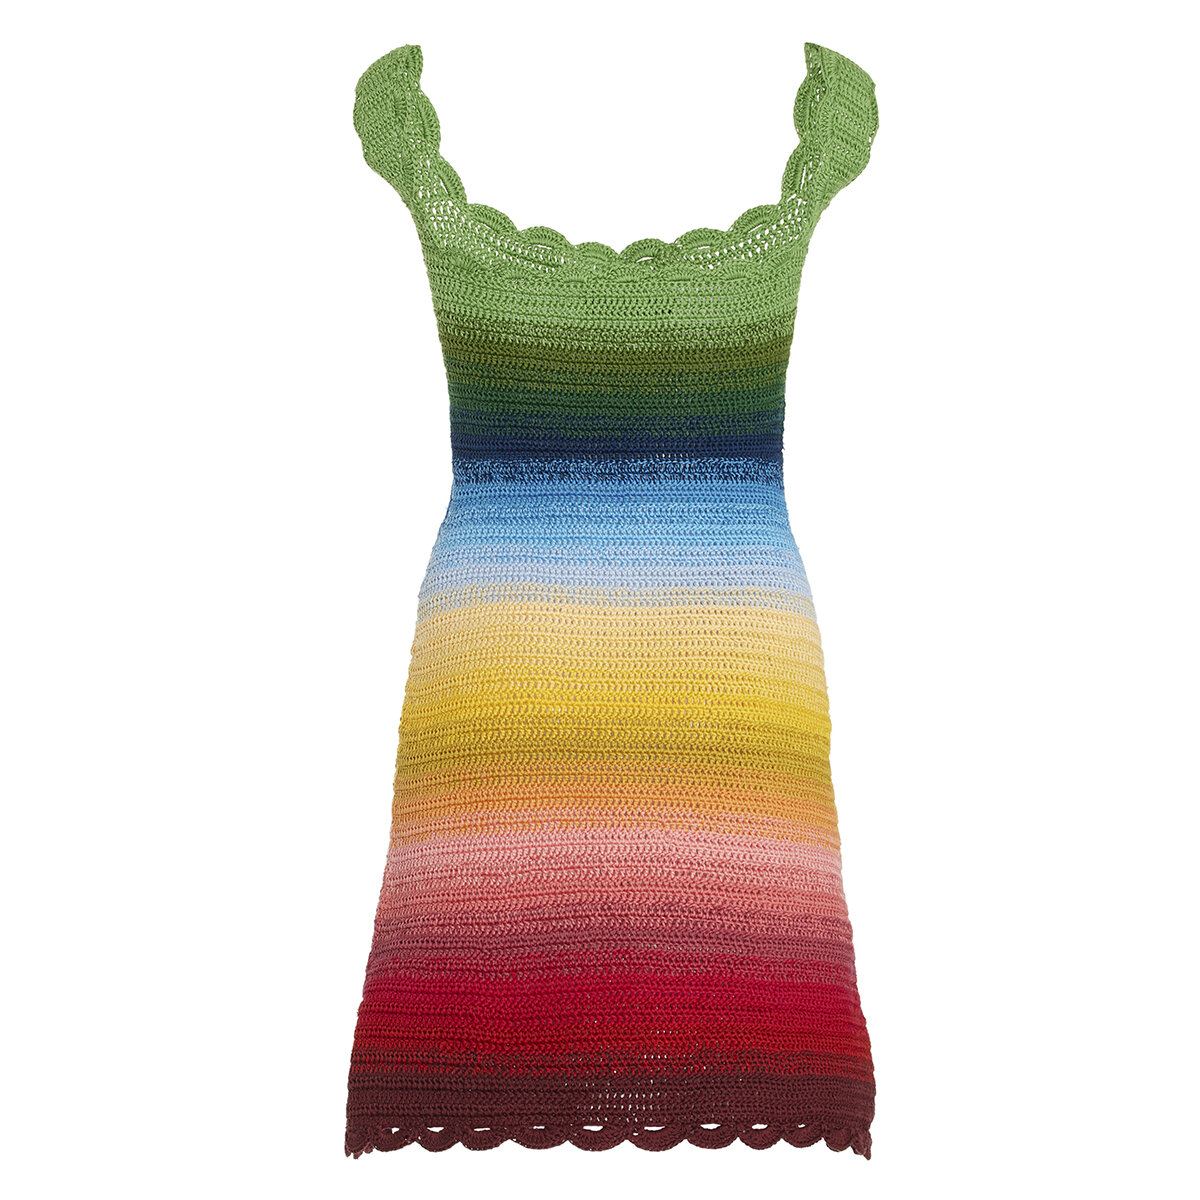 Вязаные вещи - модные тренды вязаной одежды